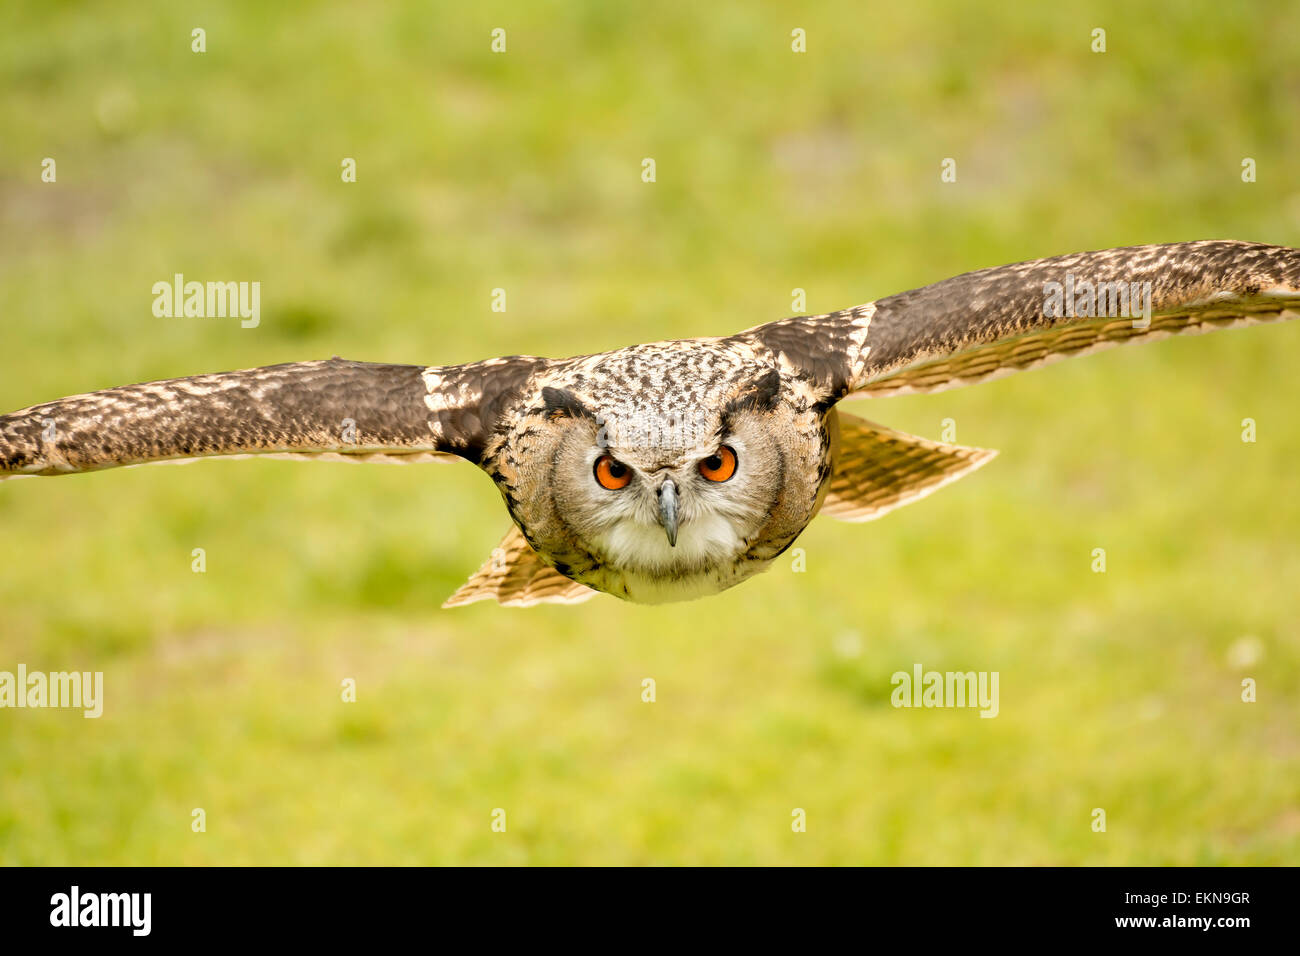 flying eagle owl Stock Photo